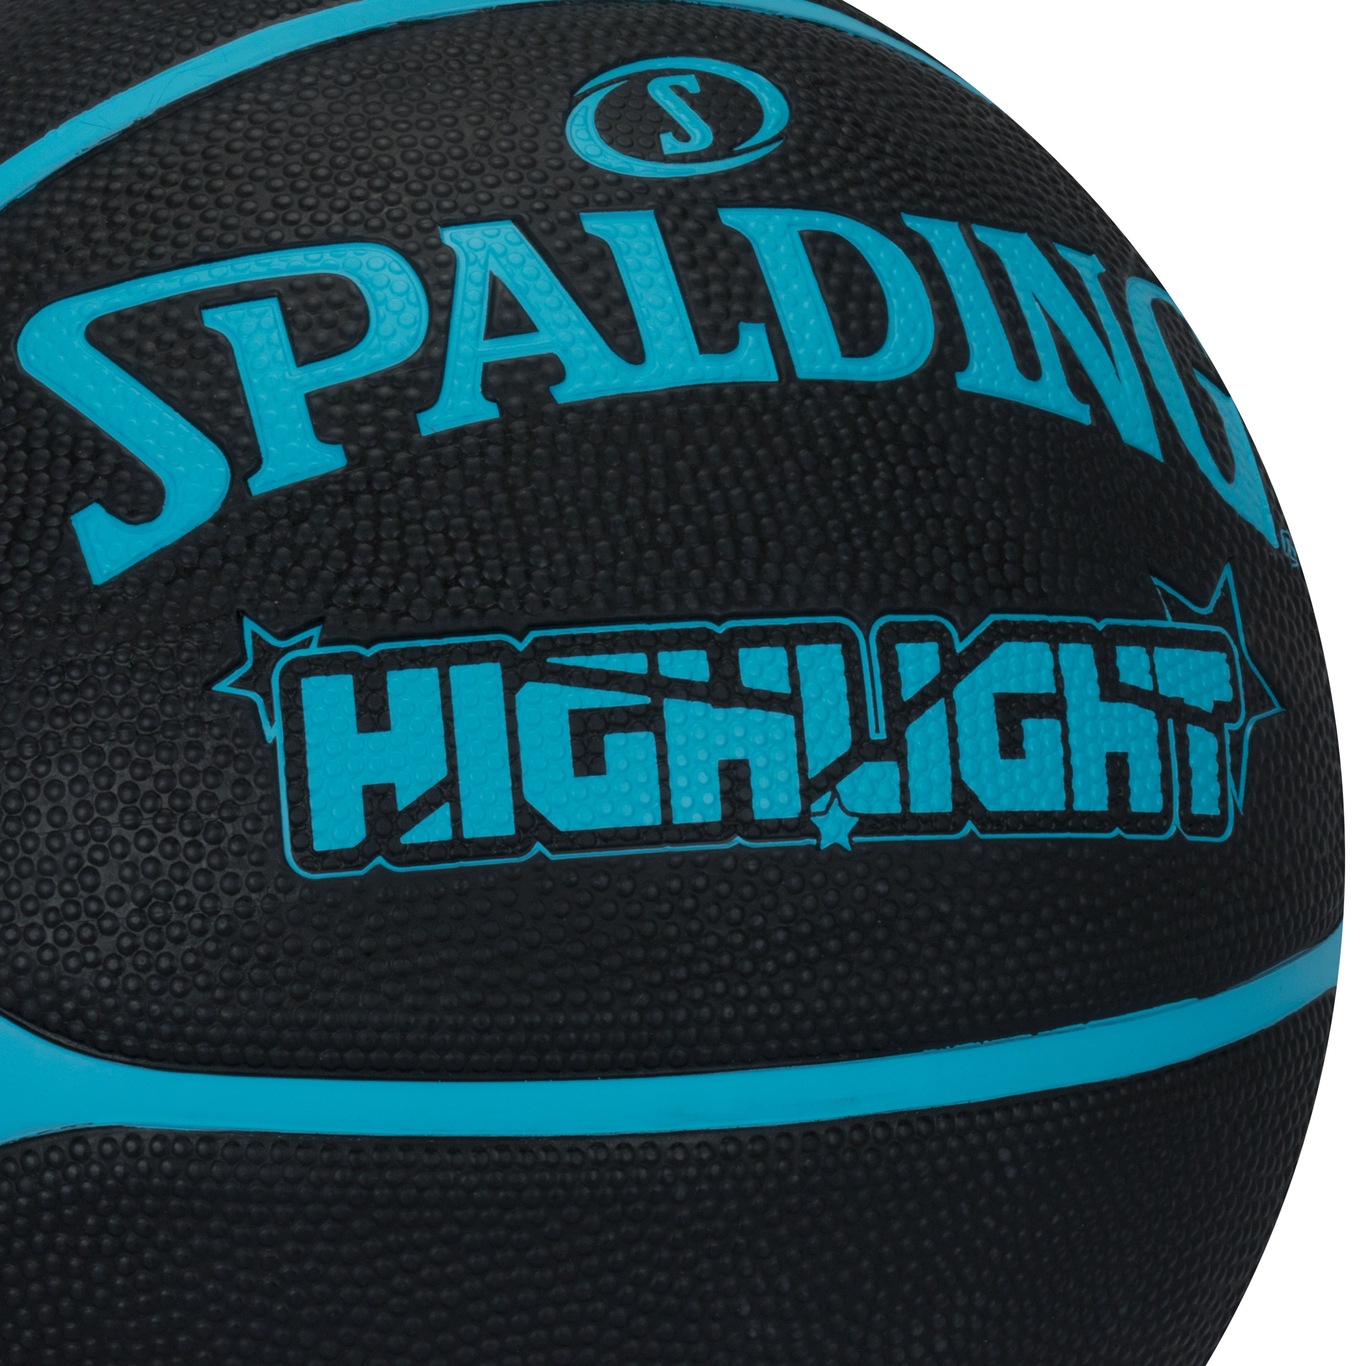 Bola basquete nba highlight blue spalding